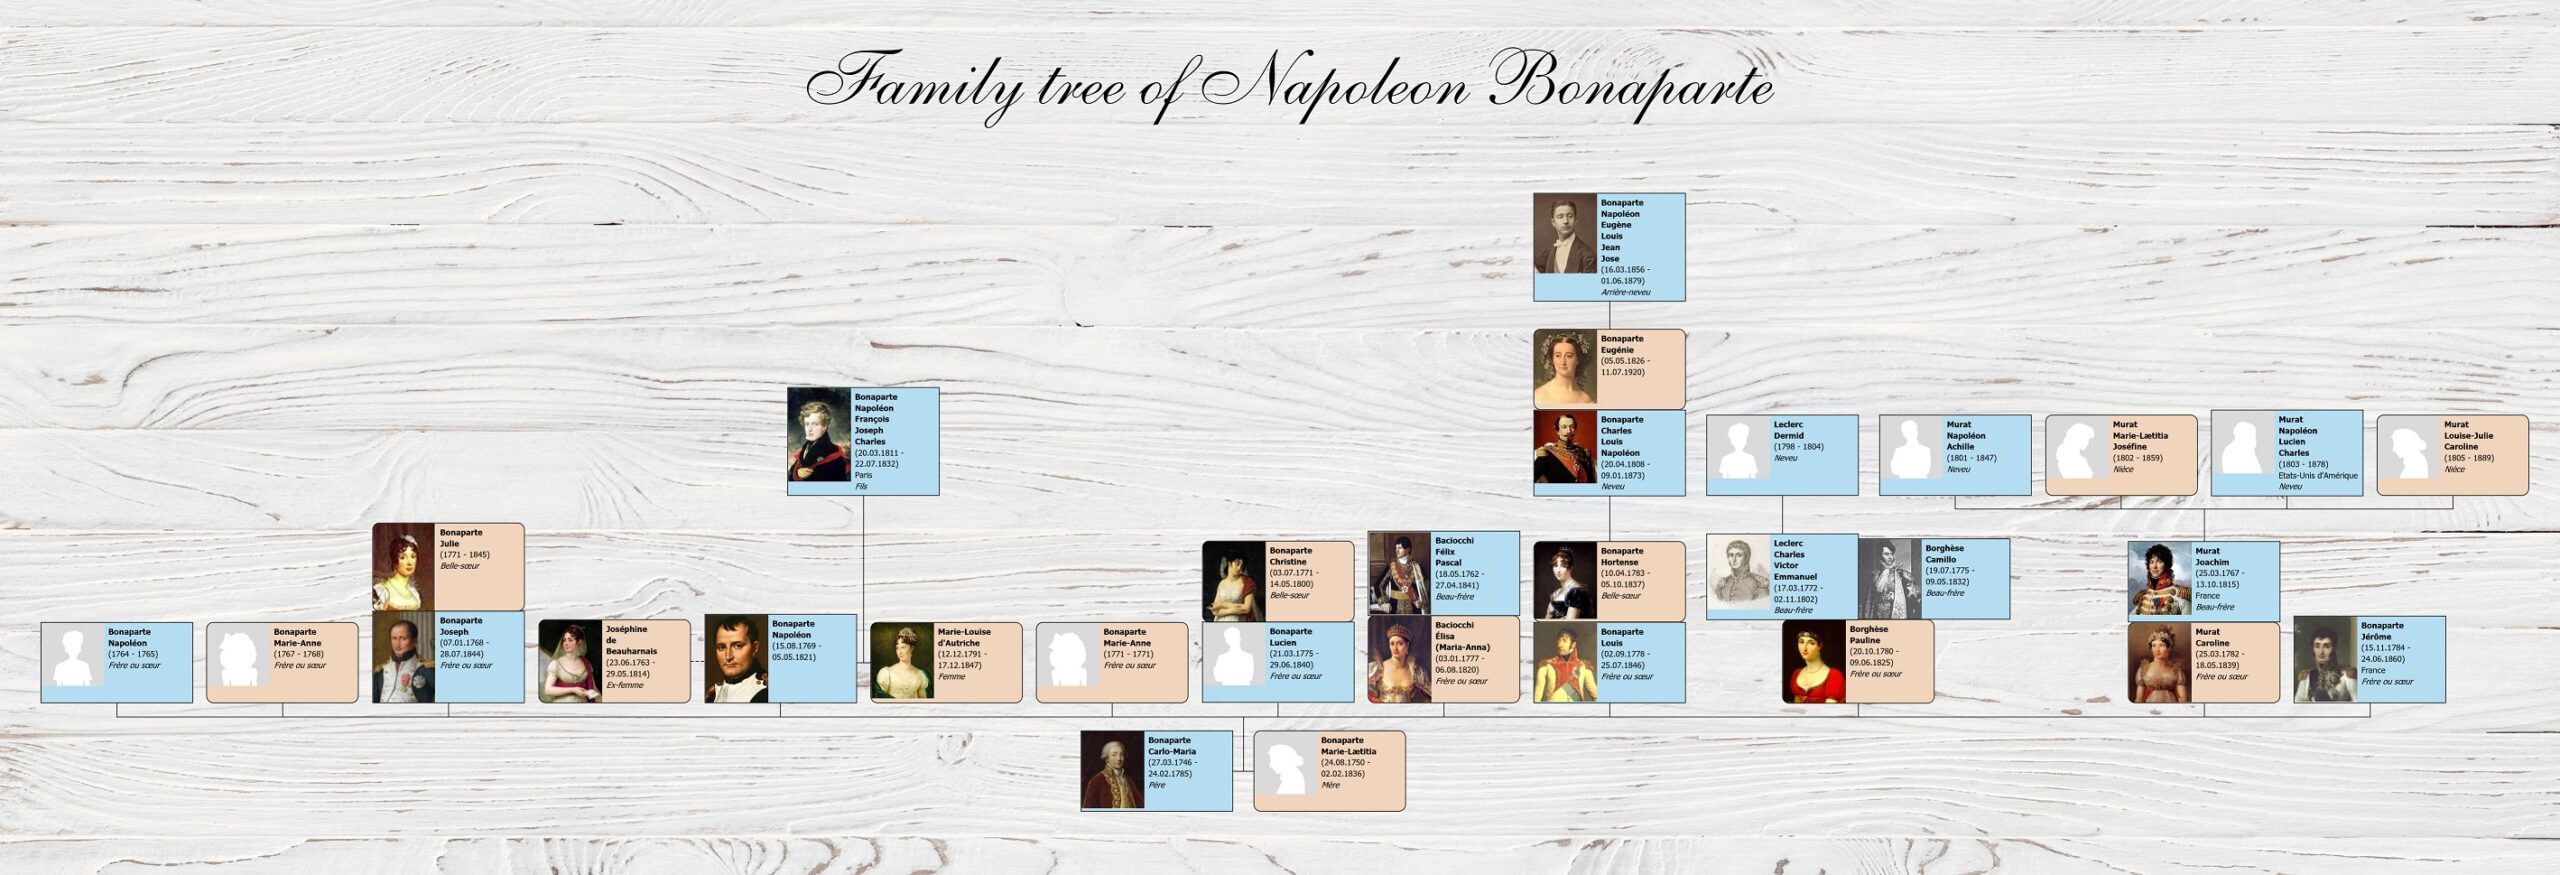 Генеалогическое дерево Наполеона